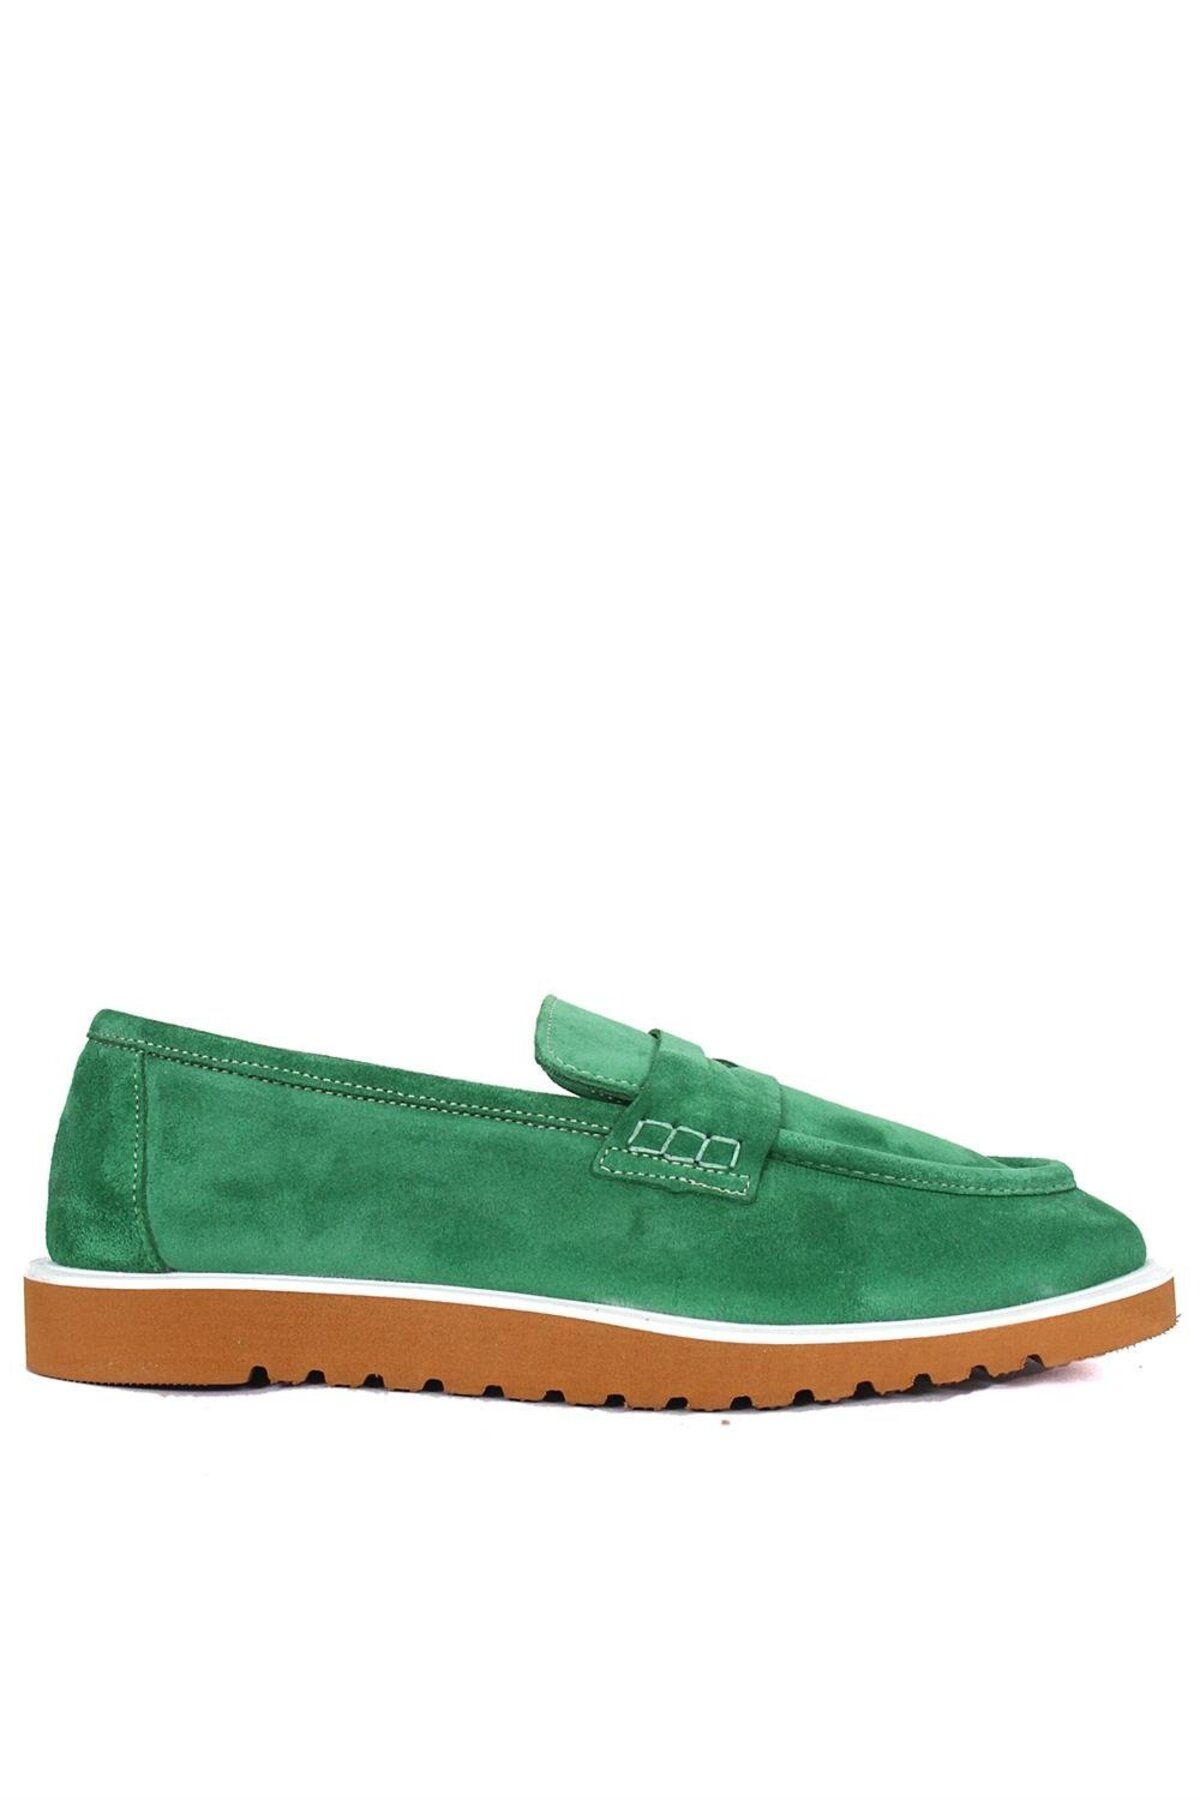 PİER LUCCİ Carolina Kadın Ayakkabı - Yeşil